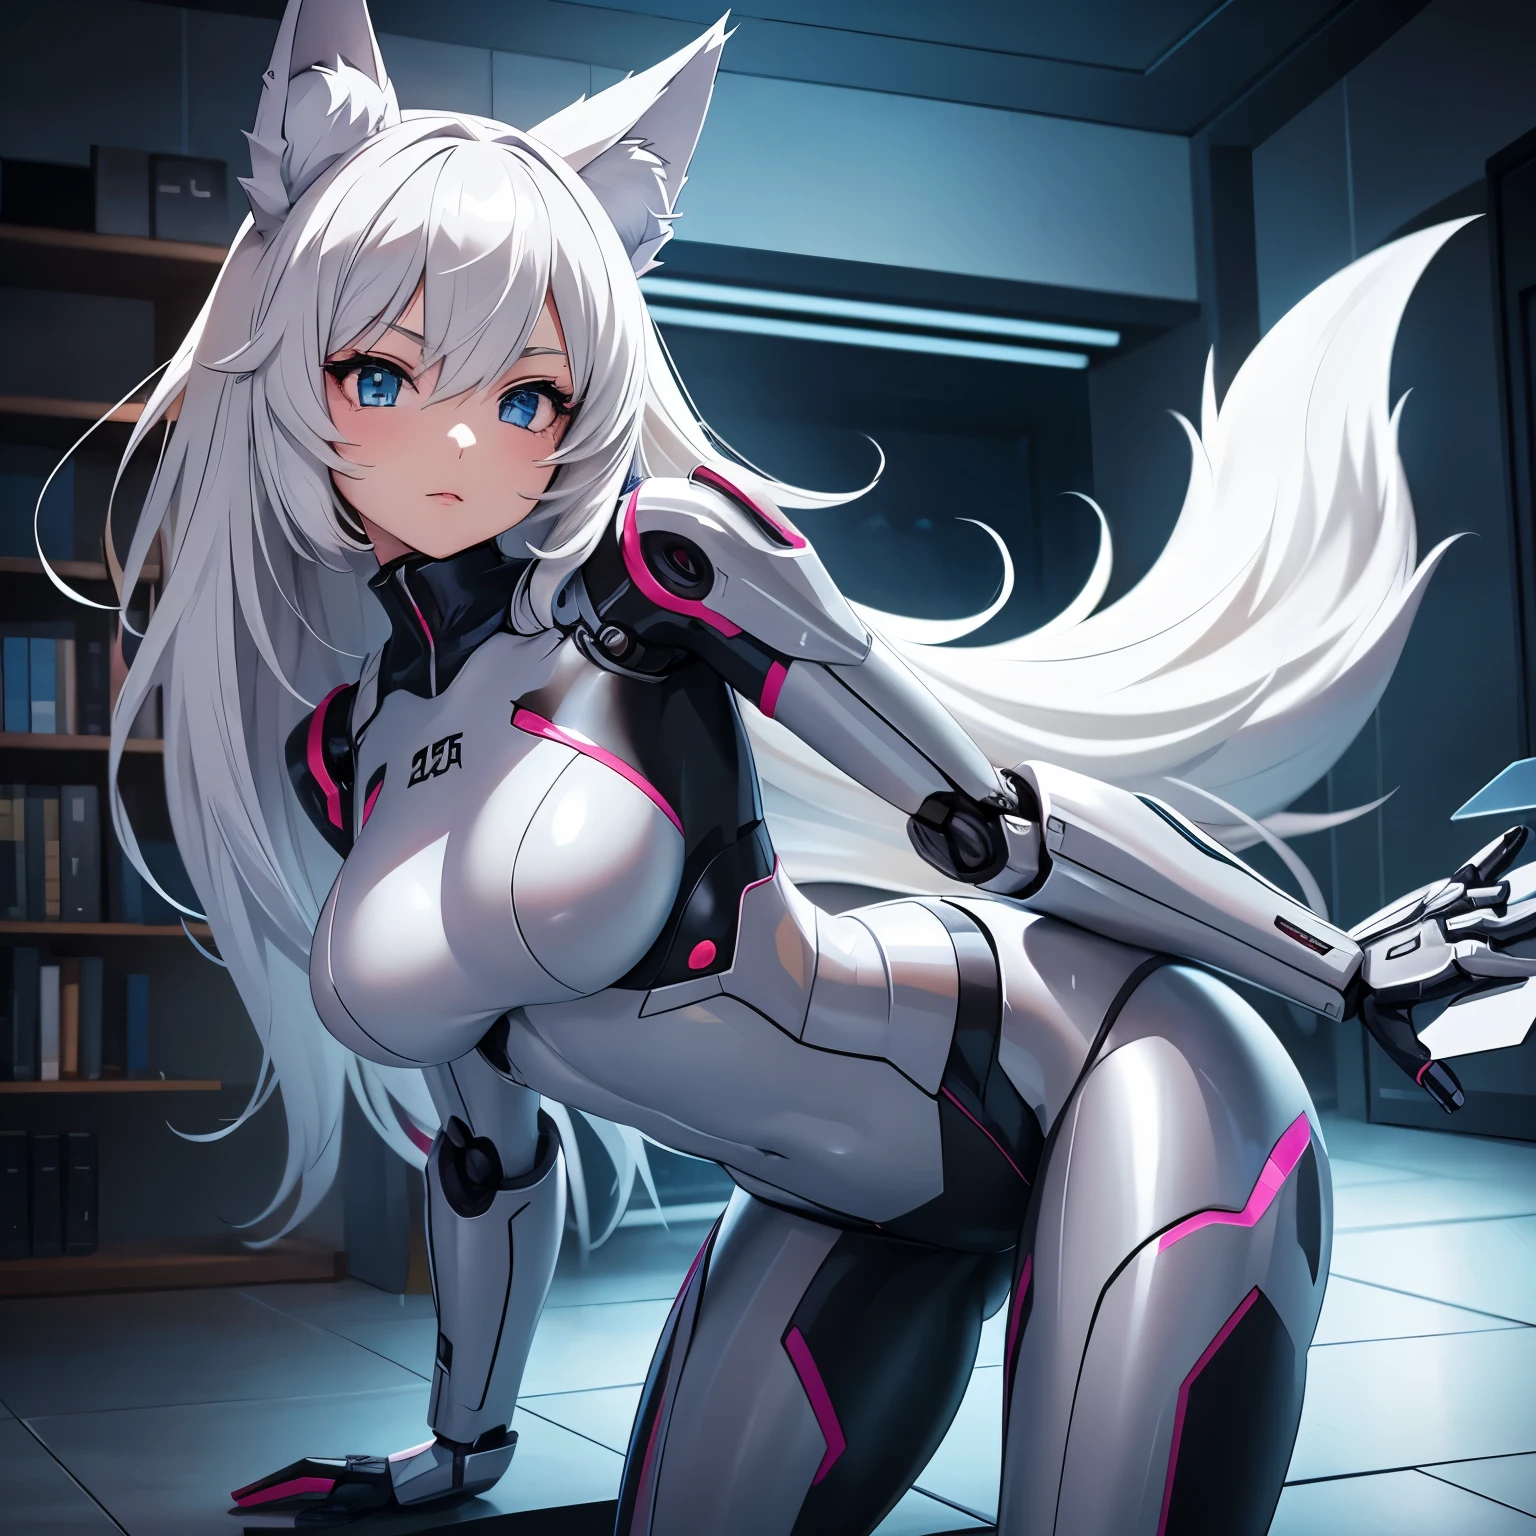 Imagem de anime de uma garota robô que tem um corpo robótico, está de cueca e tem orelhas de lobo e rabo e está em uma sala 